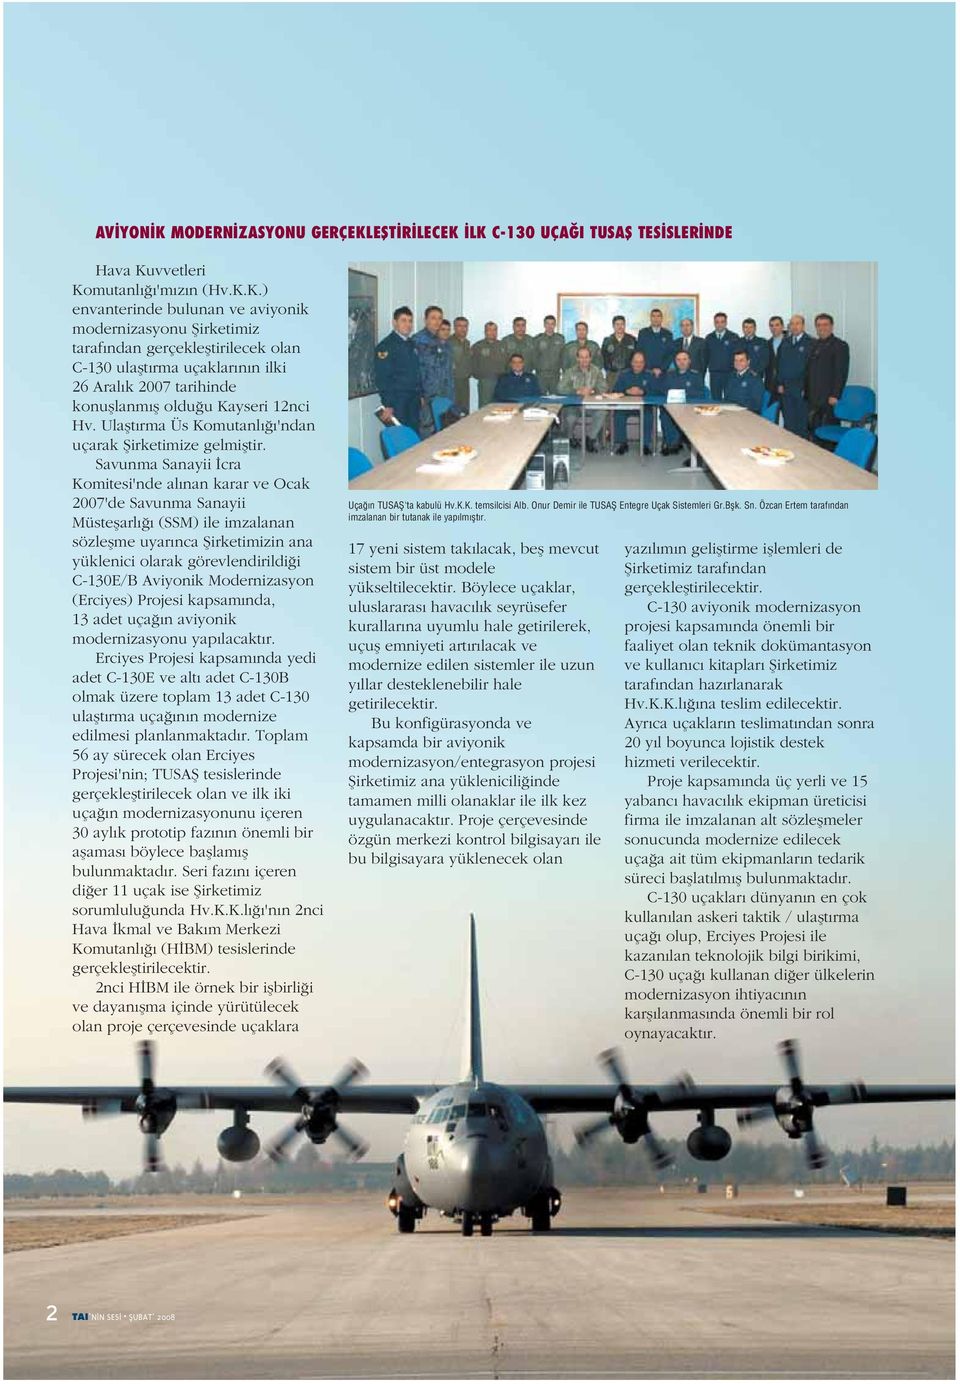 Savunma Sanayii İcra Komitesi'nde alınan karar ve Ocak 2007'de Savunma Sanayii Müsteşarlığı (SSM) ile imzalanan sözleşme uyarınca Şirketimizin ana yüklenici olarak görevlendirildiği C-130E/B Aviyonik